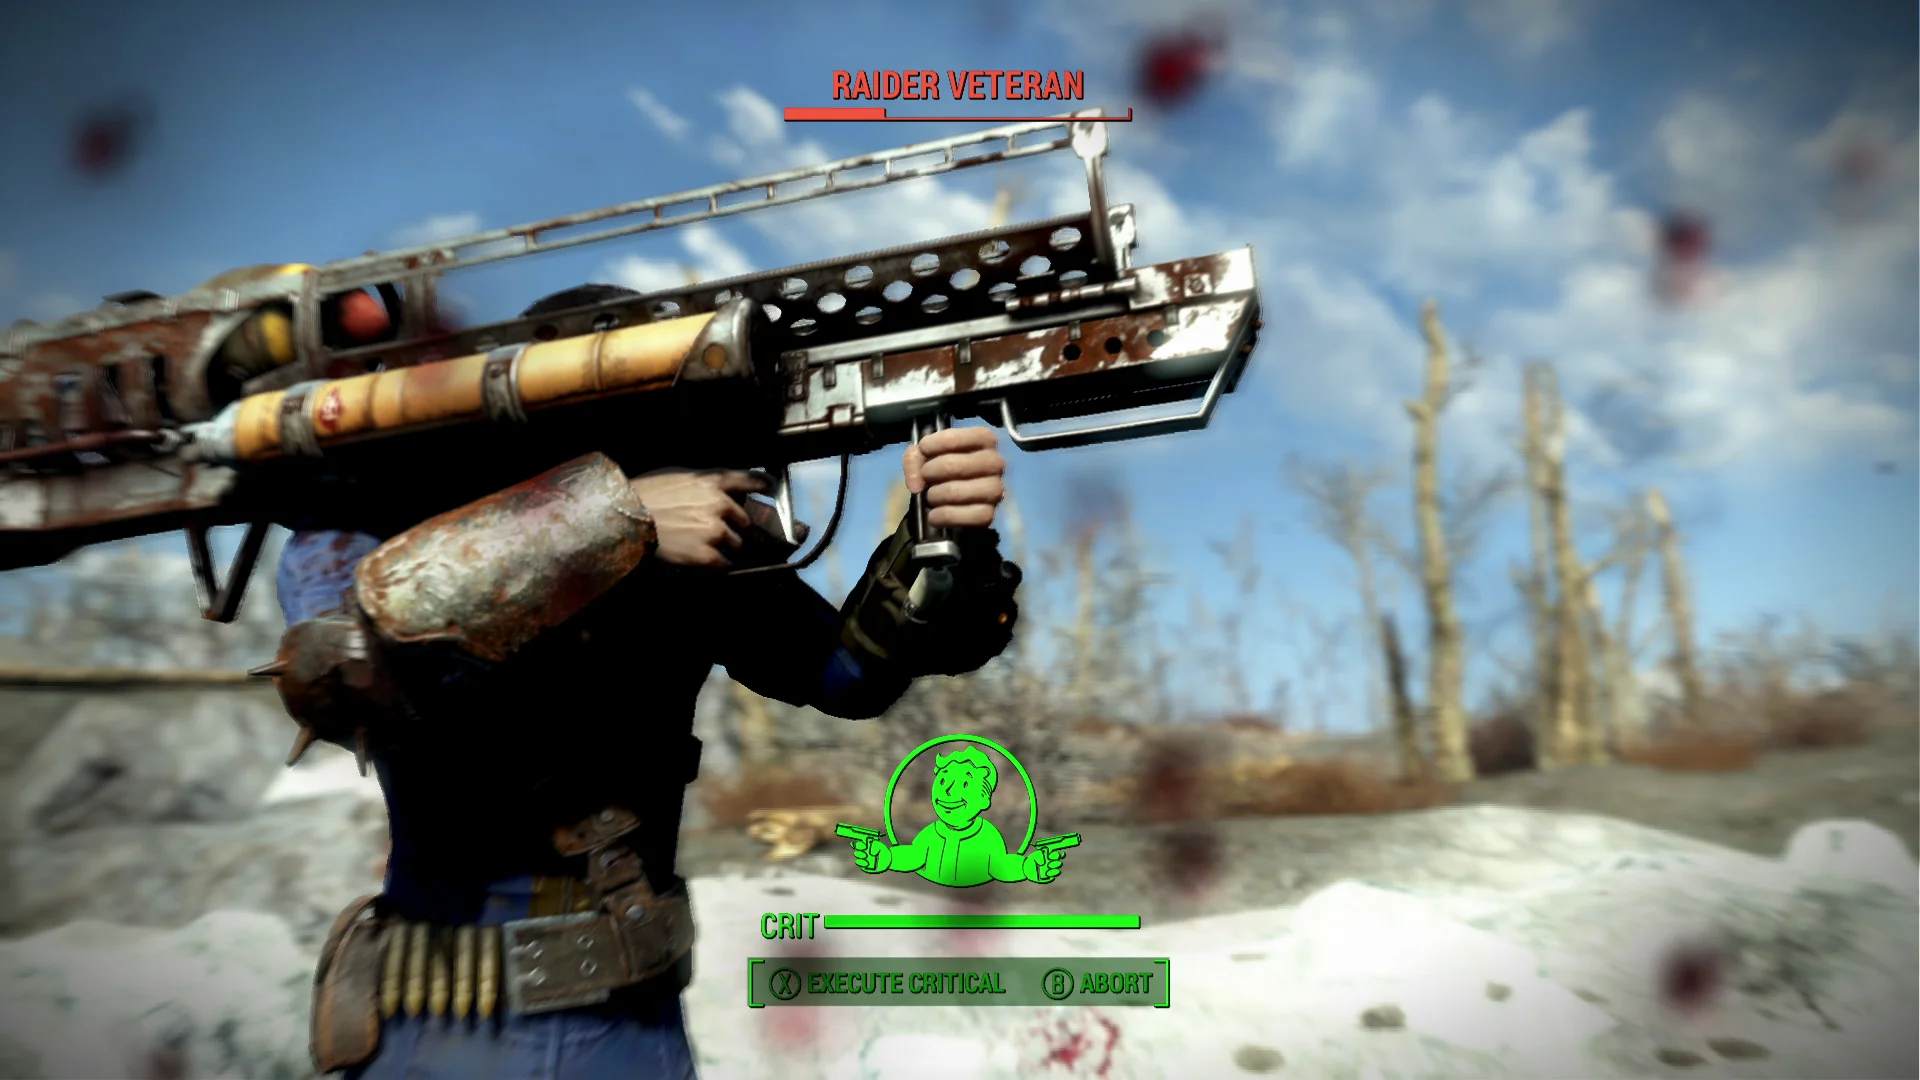 Женщина, собака и пулемет на борту в новом арте и скринах Fallout 4 - фото 13